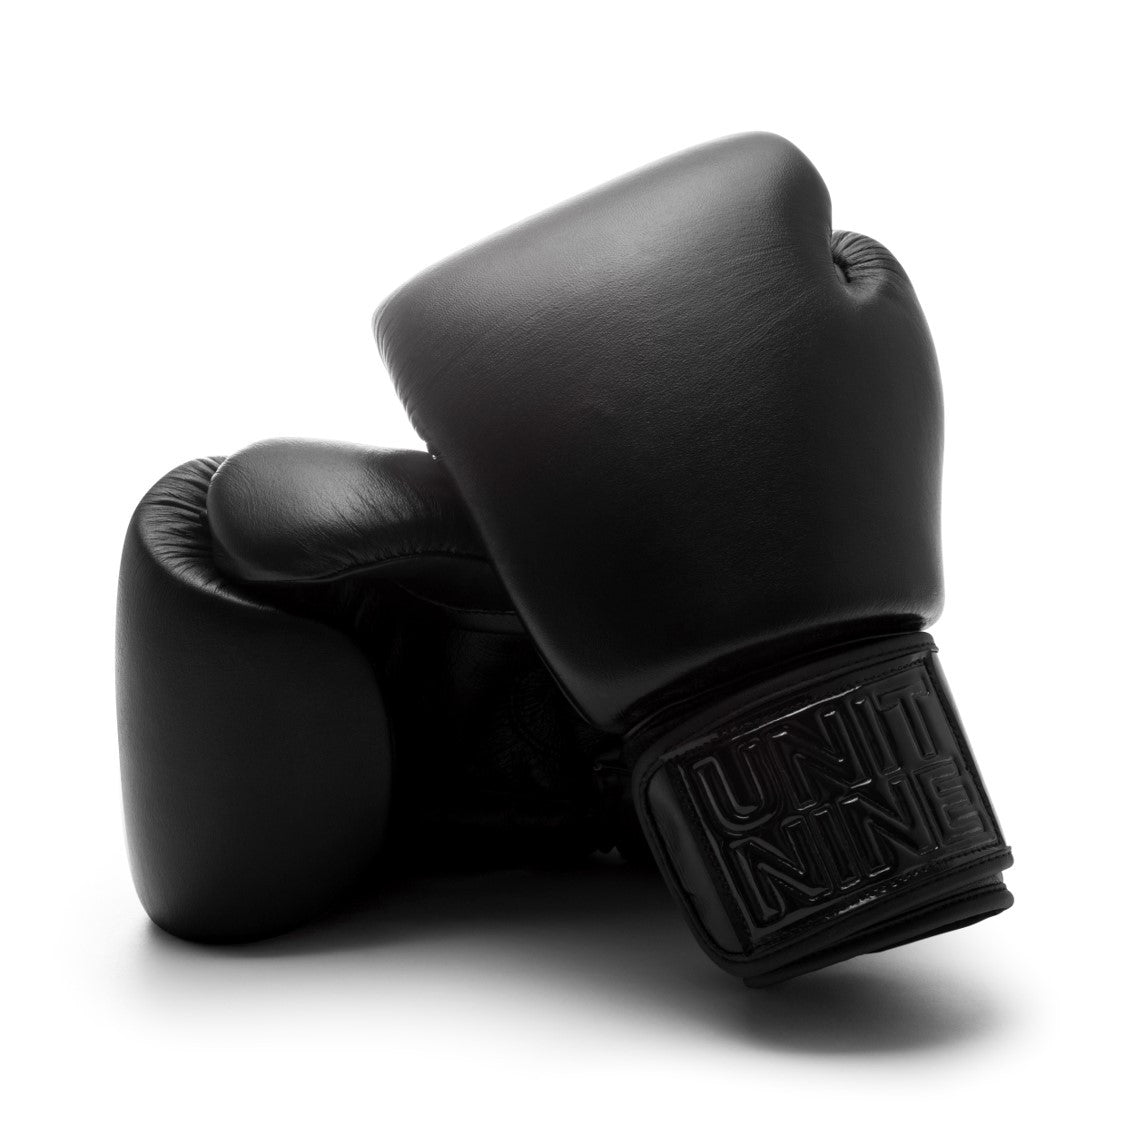 UNIT NINE Black Panther Boxing Gloves